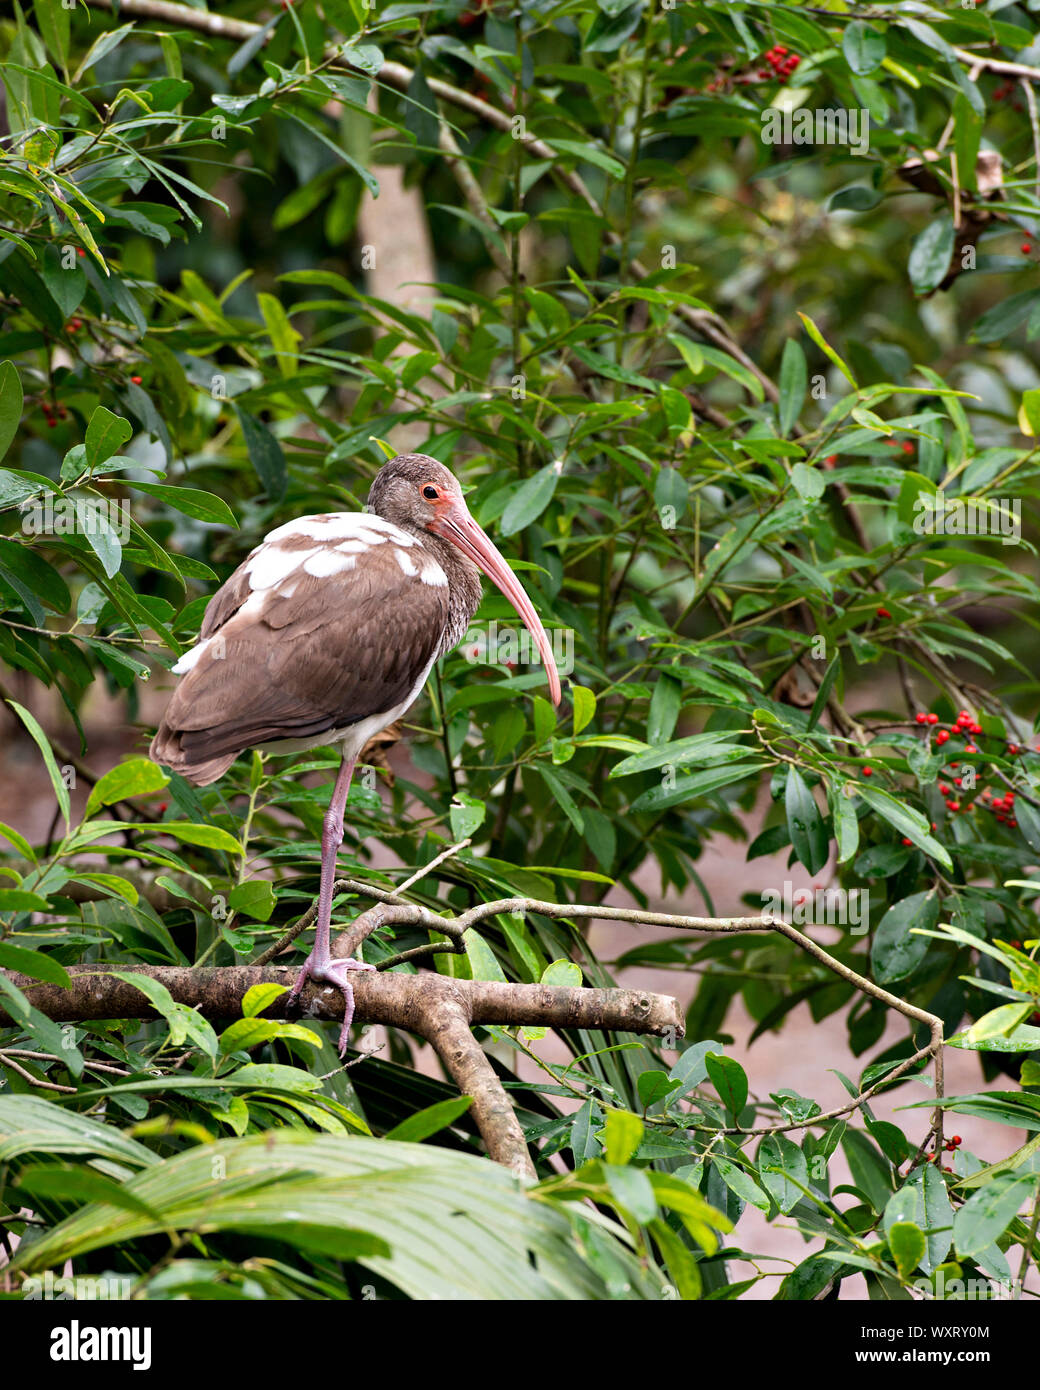 Ibis blanc d'oiseaux immatures se percher sur une branche dans son environnement et ses environs. Banque D'Images